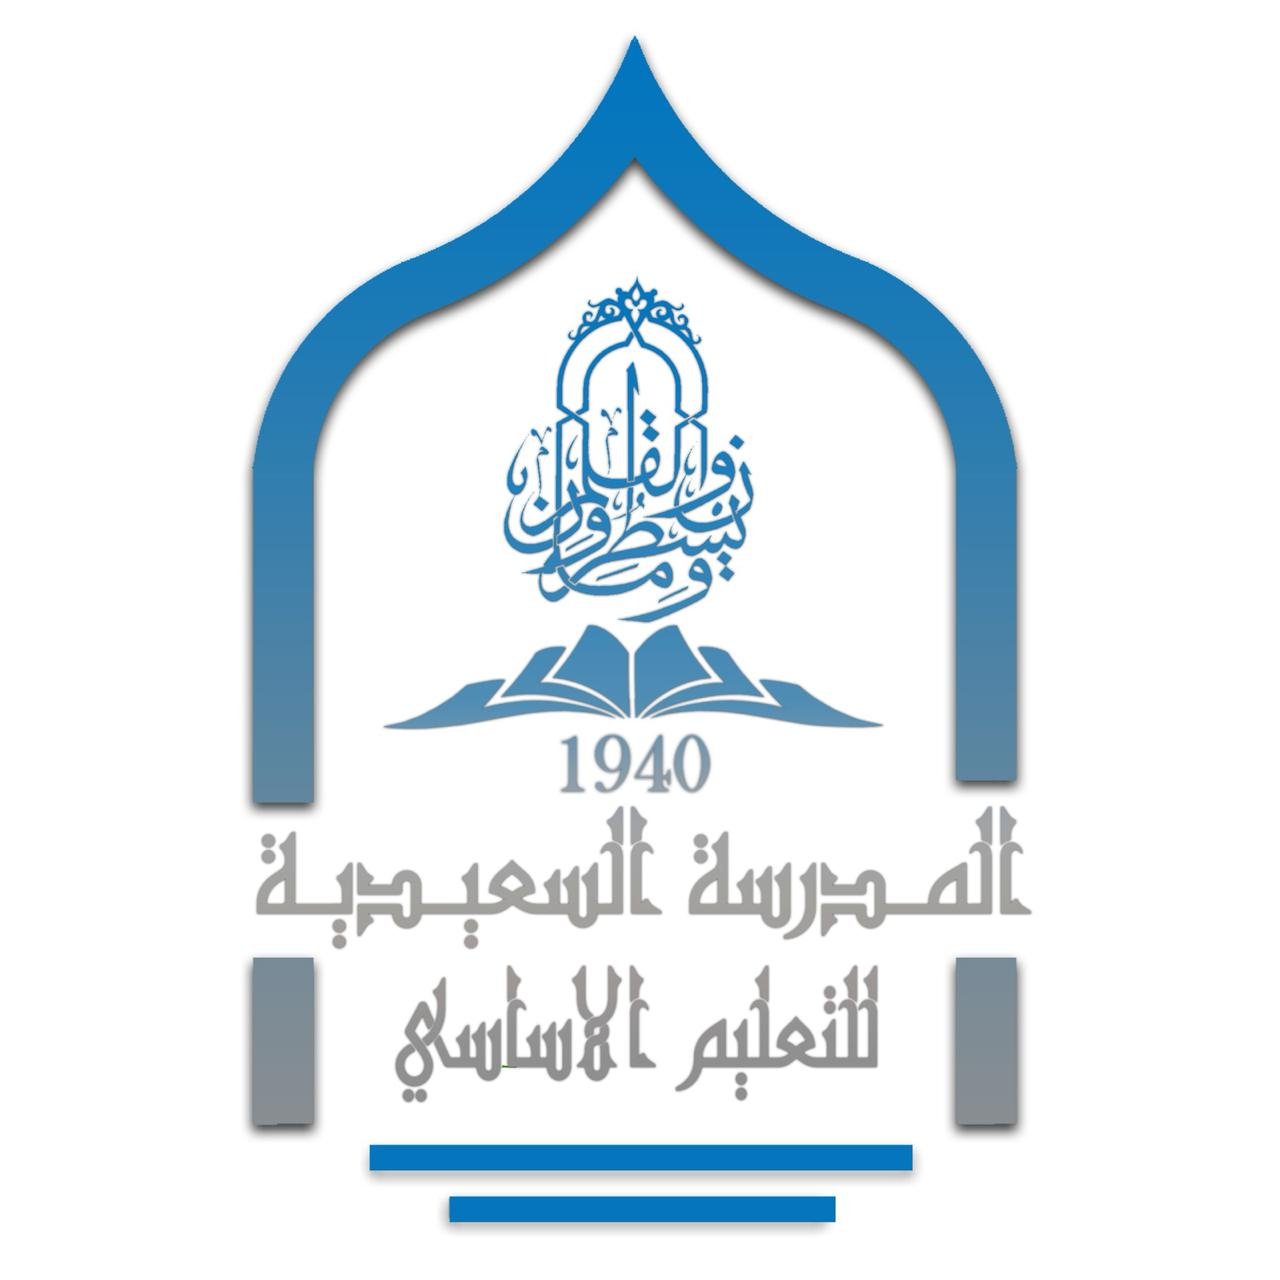 أول مدرسة نظامية في سلطنة عمان حيث افتتحت عام 1940 في عهد السلطان سعيد بن تيمور